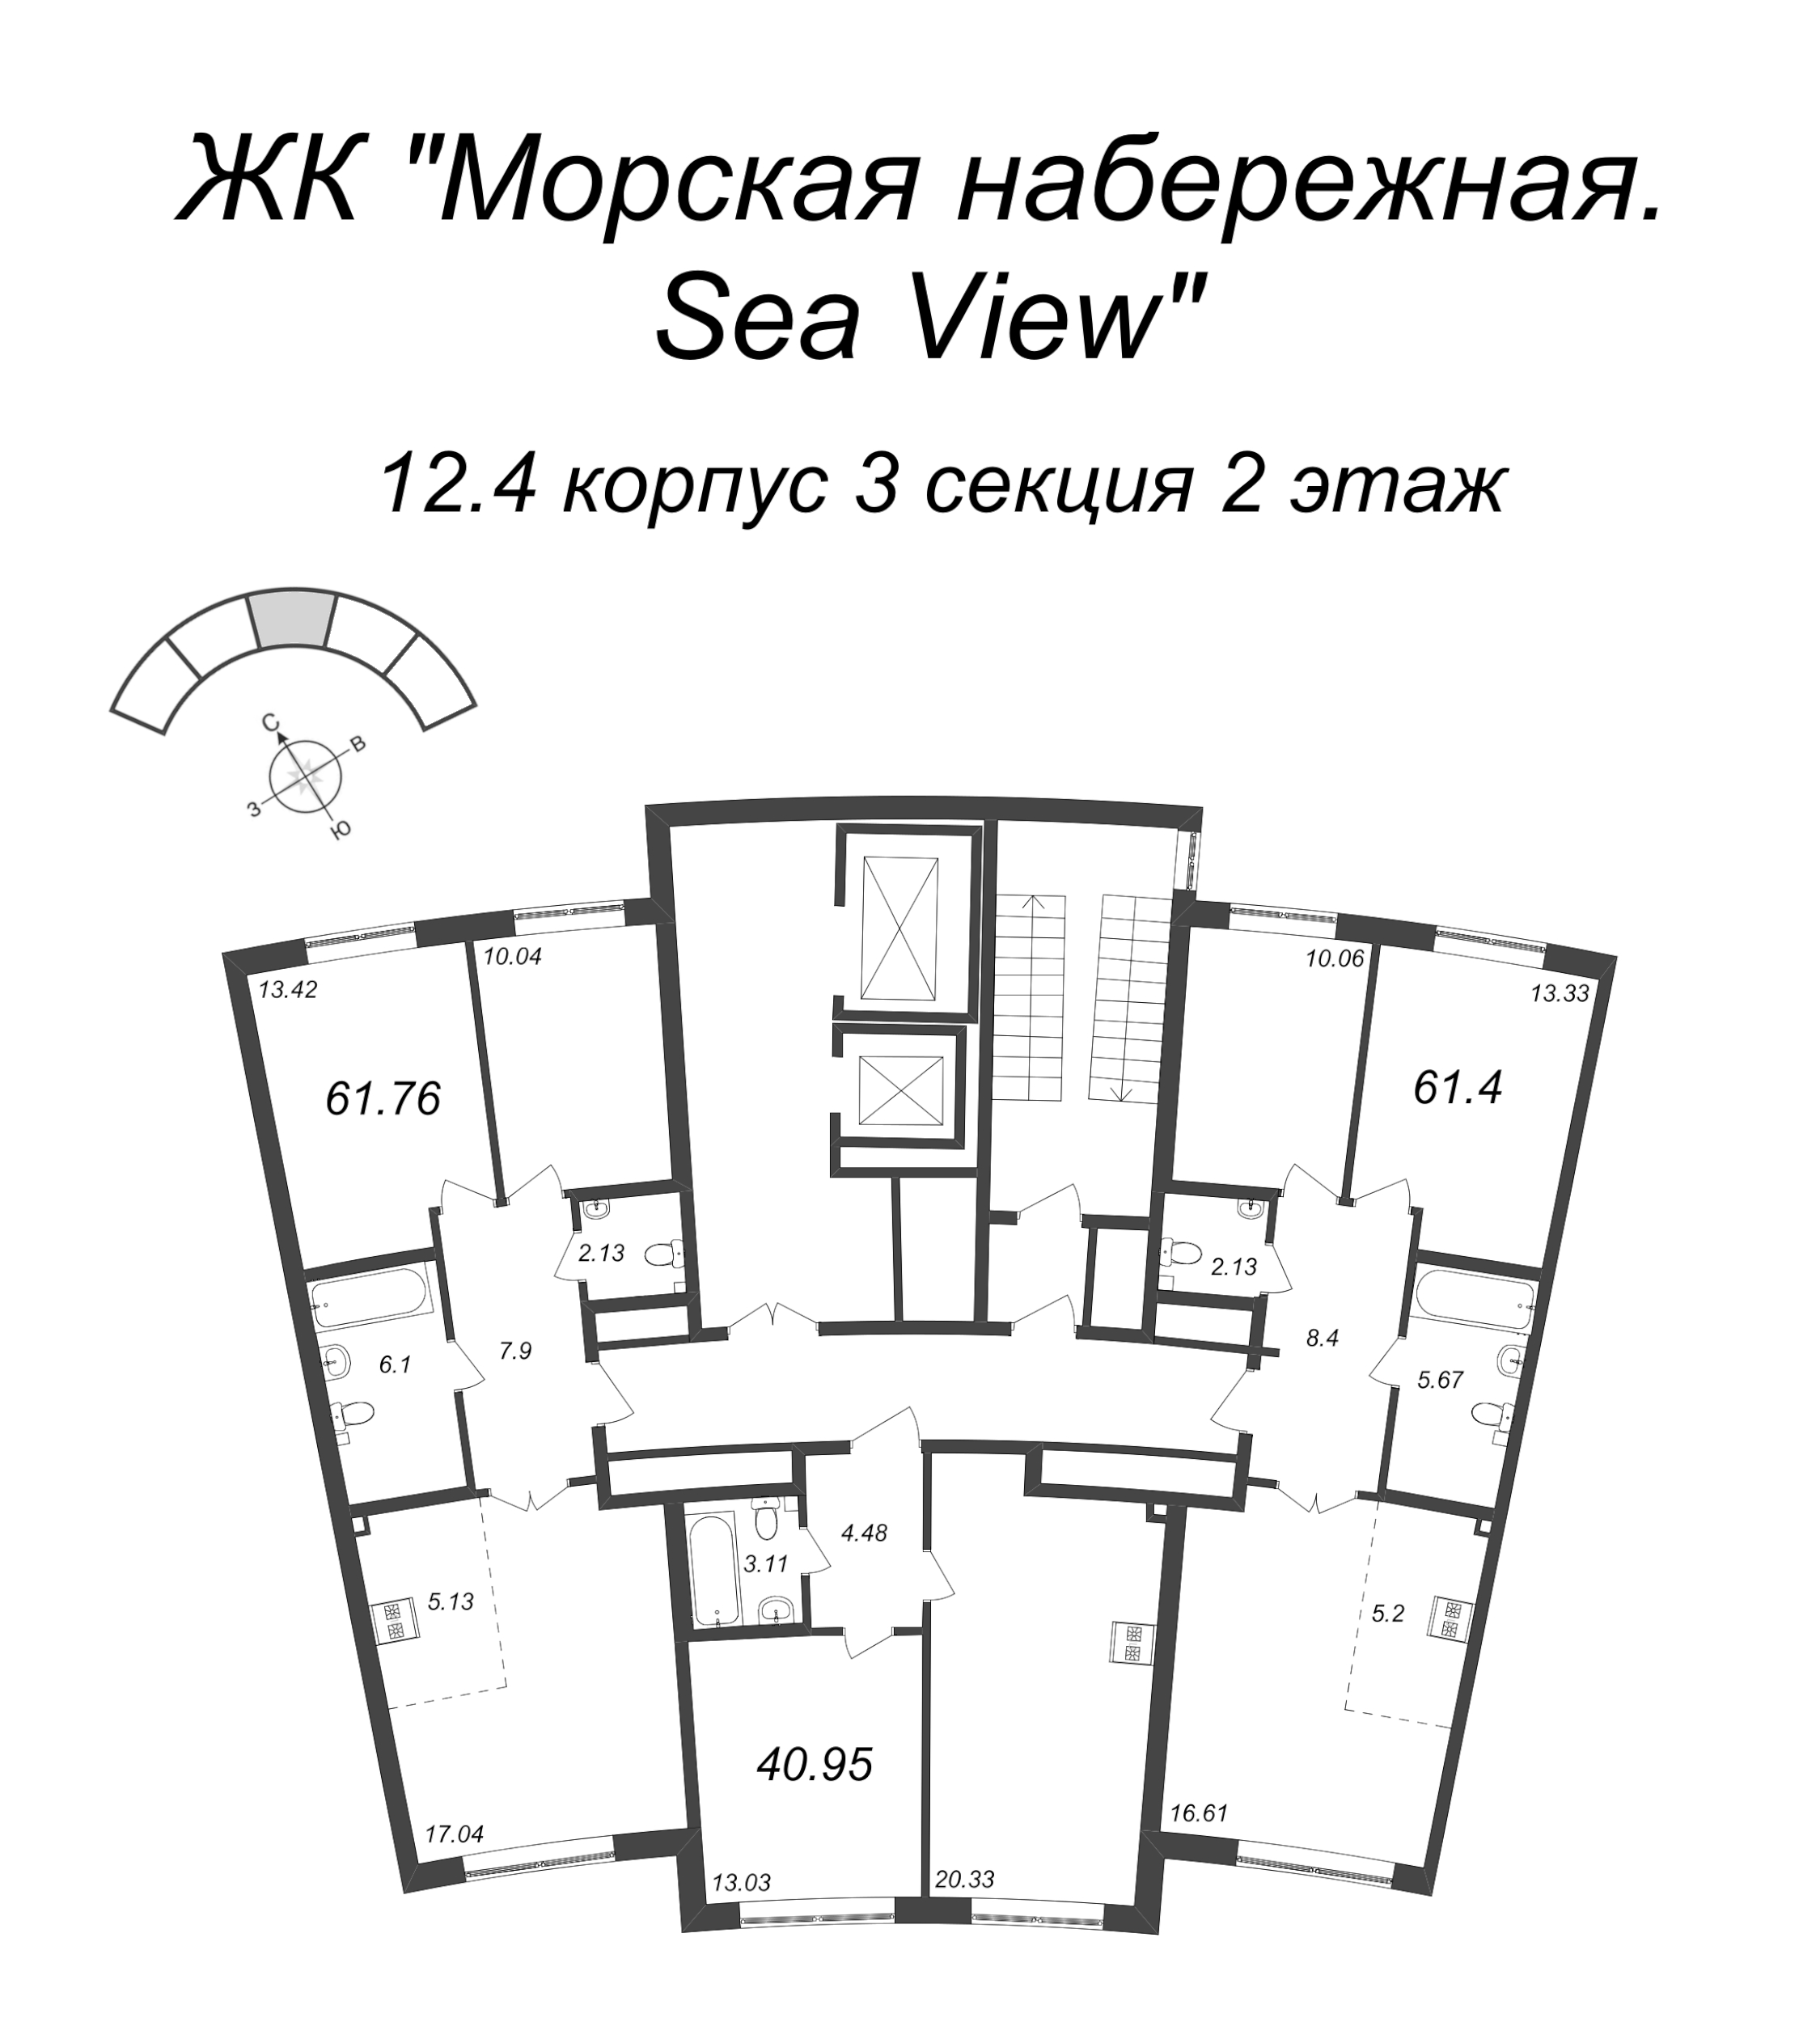 3-комнатная (Евро) квартира, 61.4 м² в ЖК "Морская набережная. SeaView" - планировка этажа